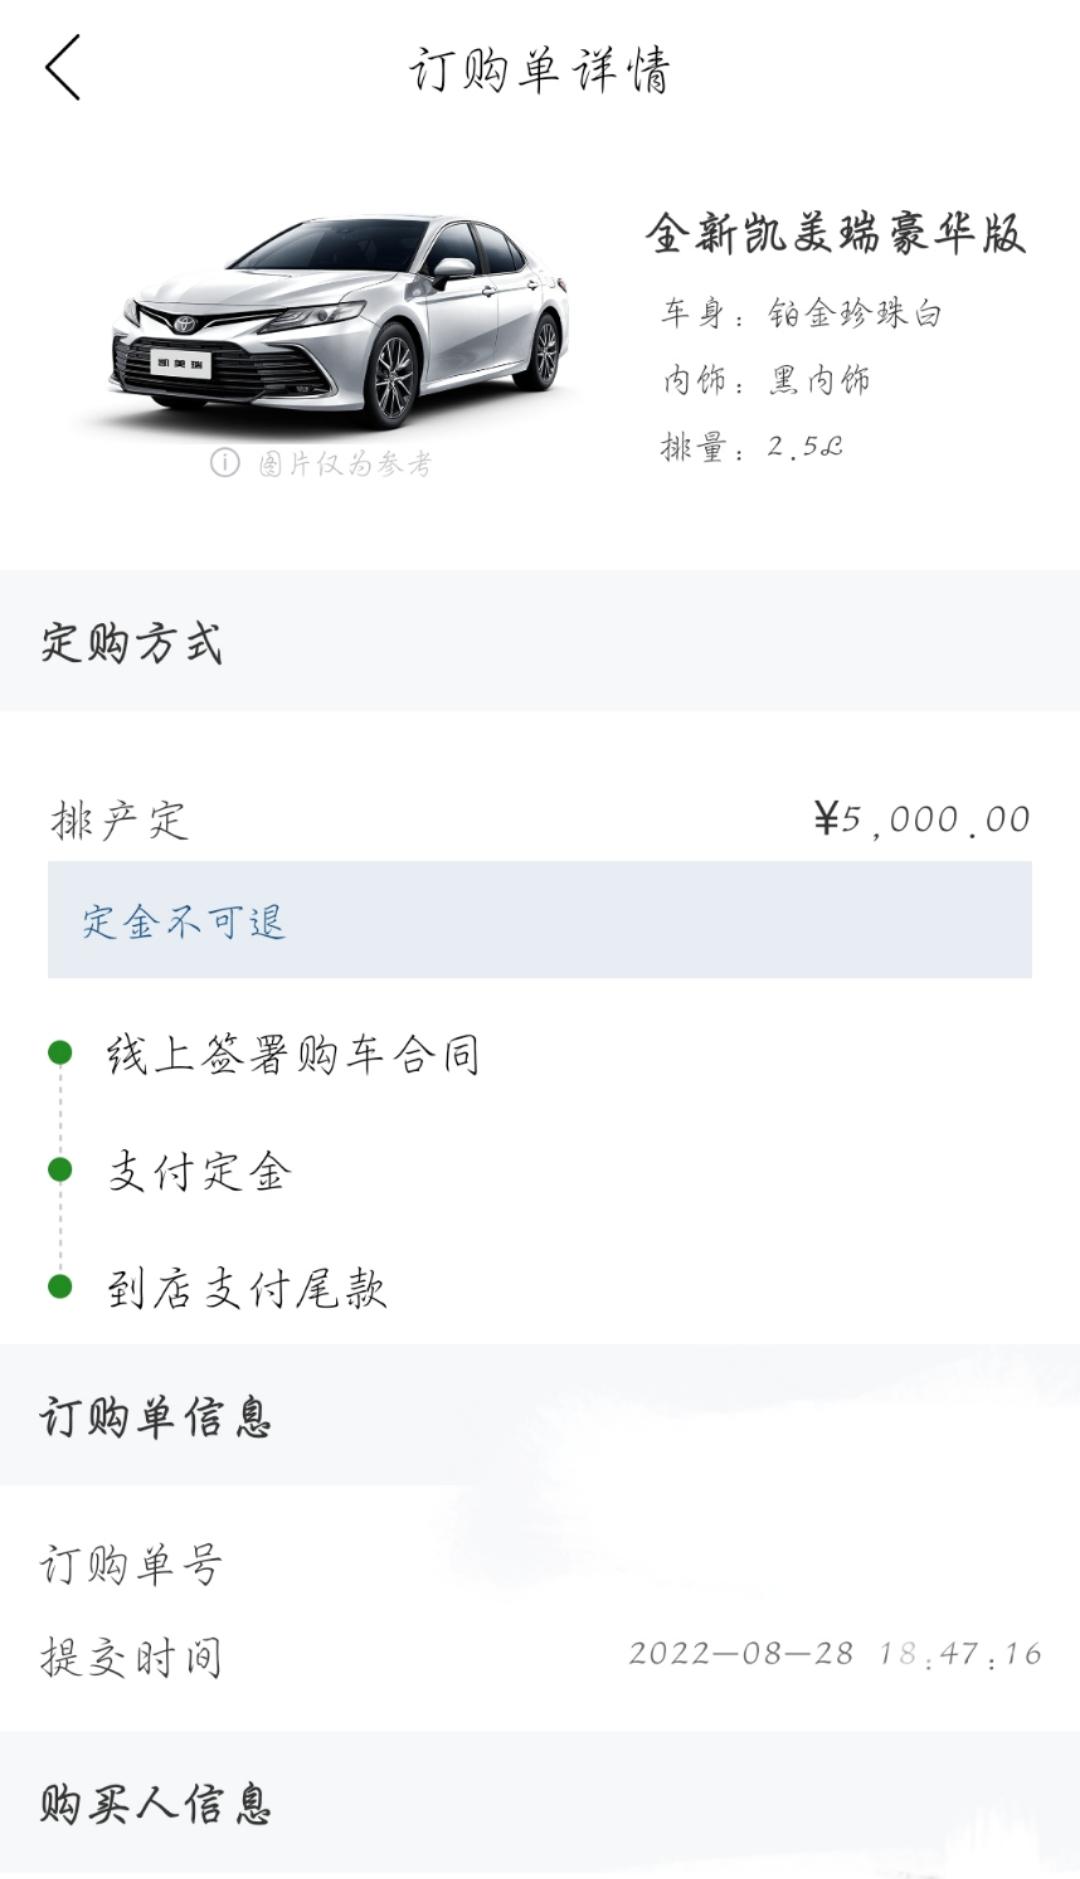 坐标广州，8月28订了凯美瑞2.5汽油豪华版珍珠白，落地价22.28w，送360，行车记录仪…，这个价格是不是买贵了，想